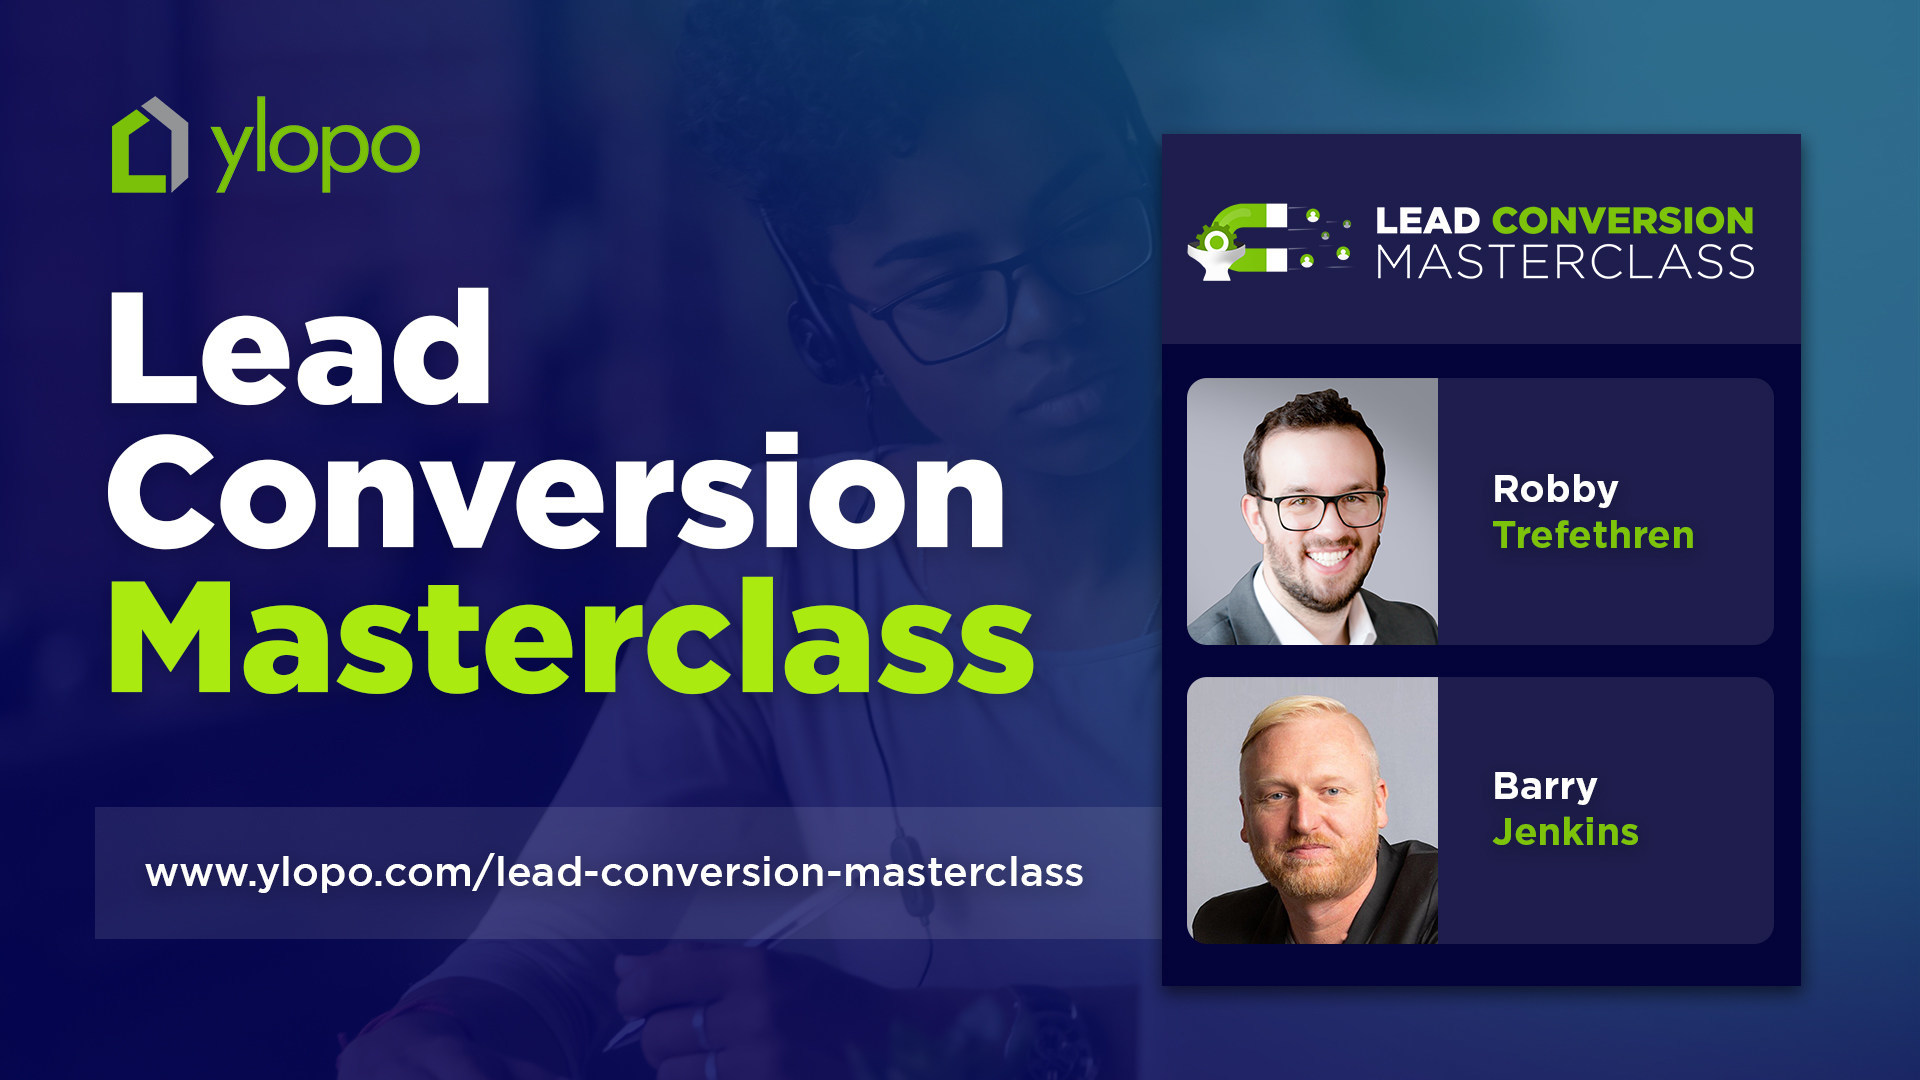 ylopo Lead Conversion MasterClass